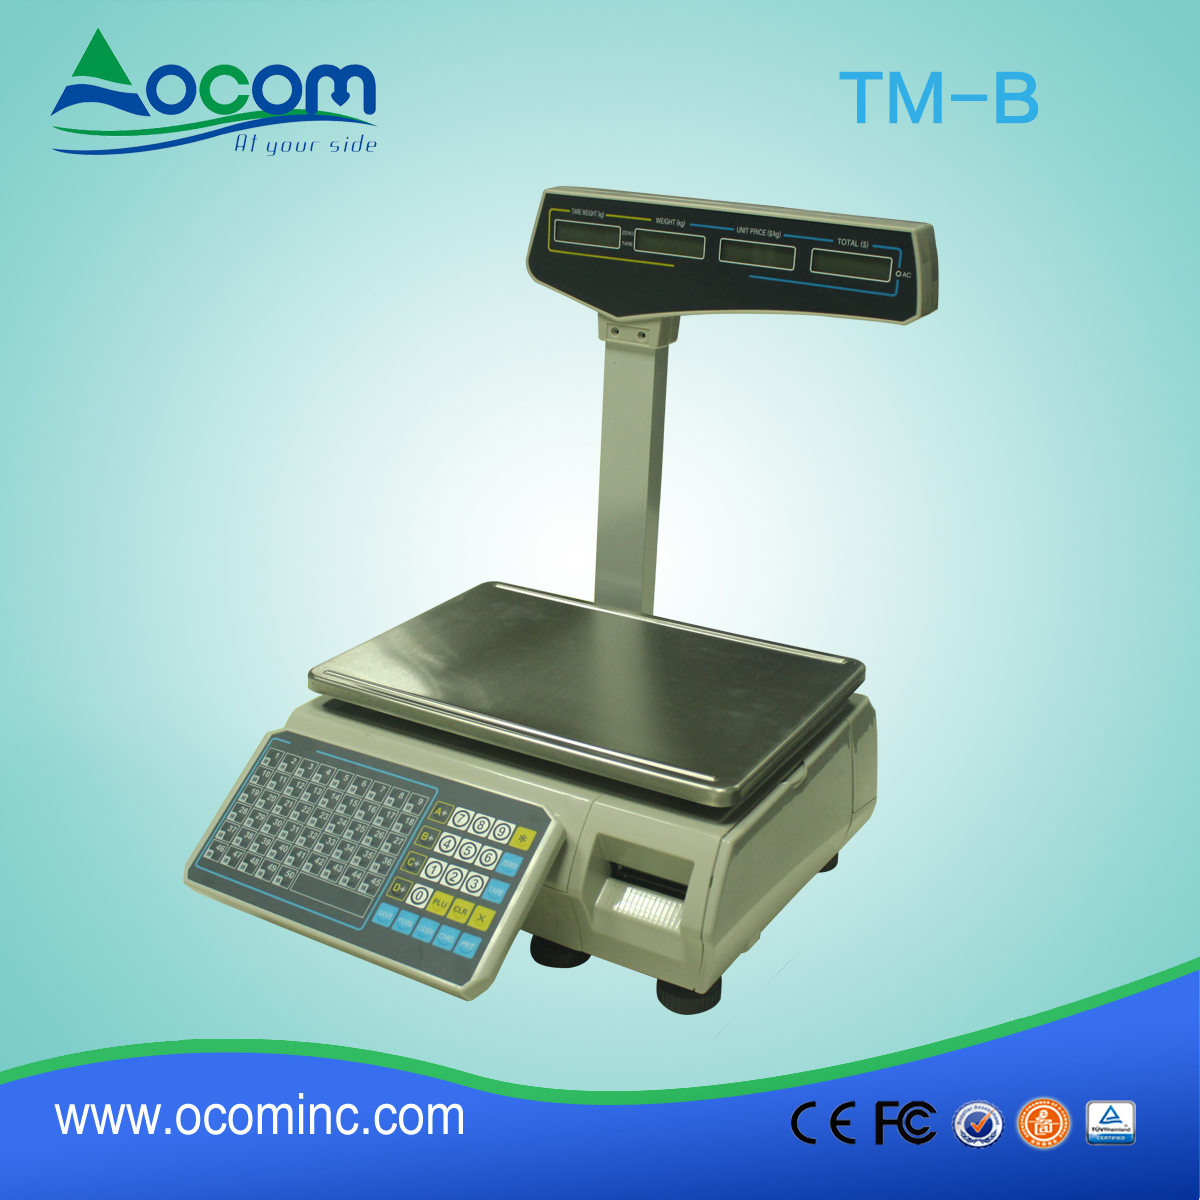 (tm-b) البطاقة الحرارية ذات التكلفة المنخفضة المقياس التلقائي للوزن